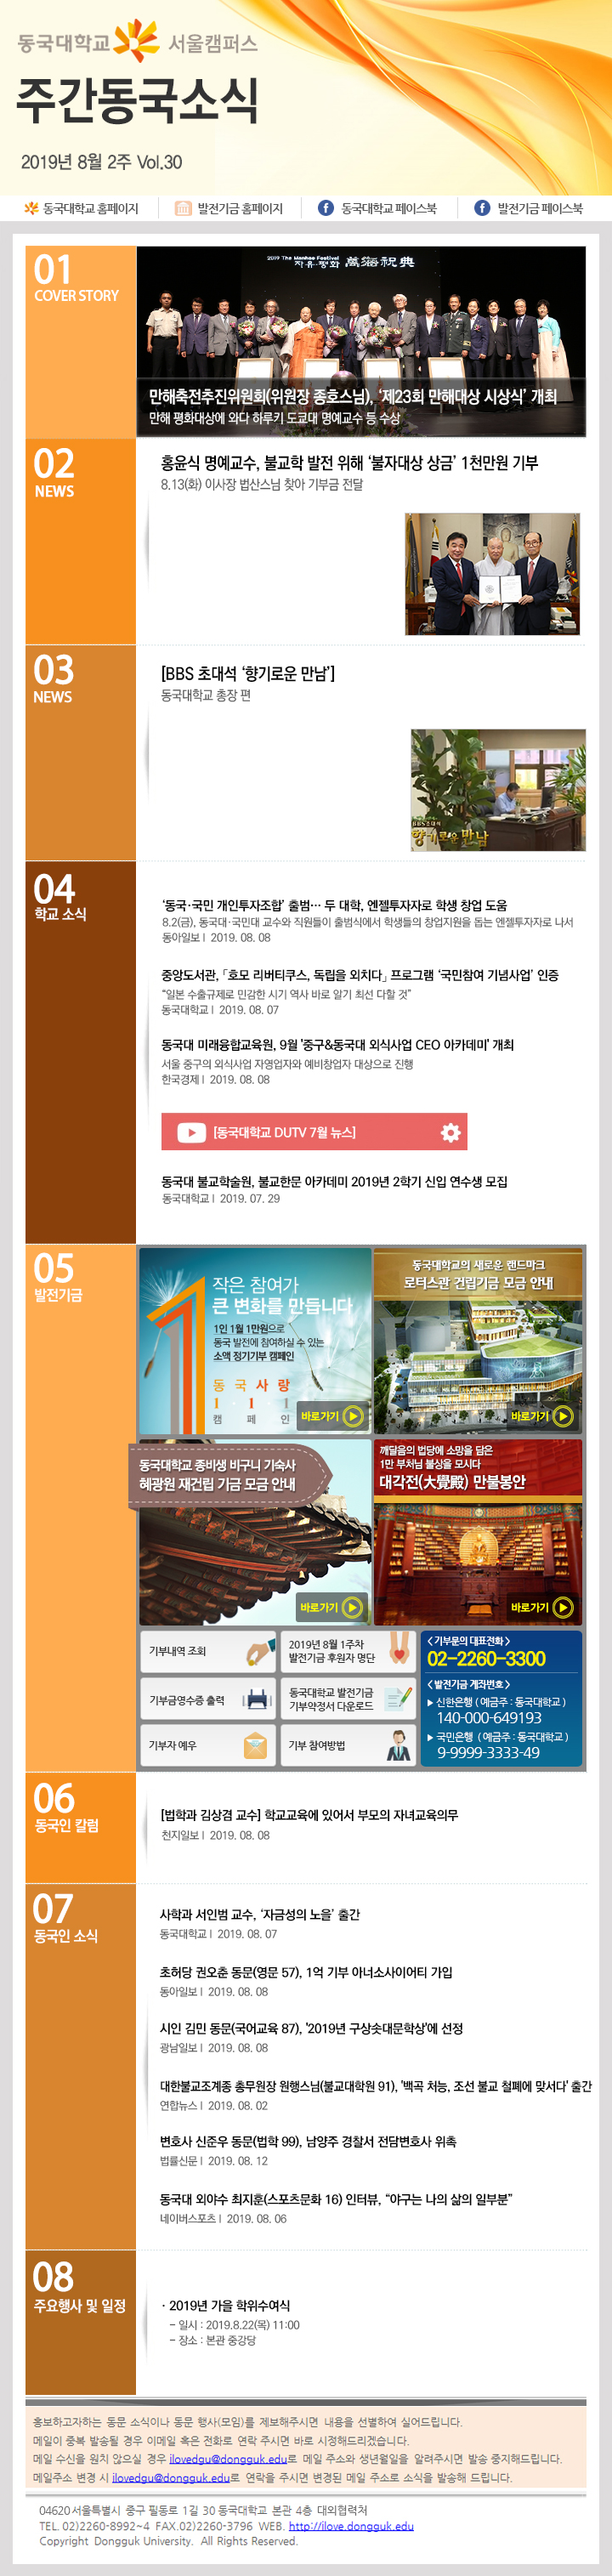 동국웹진 2019년 8월 2주 - 자세한 내용은 첨부파일로 확인하세요.